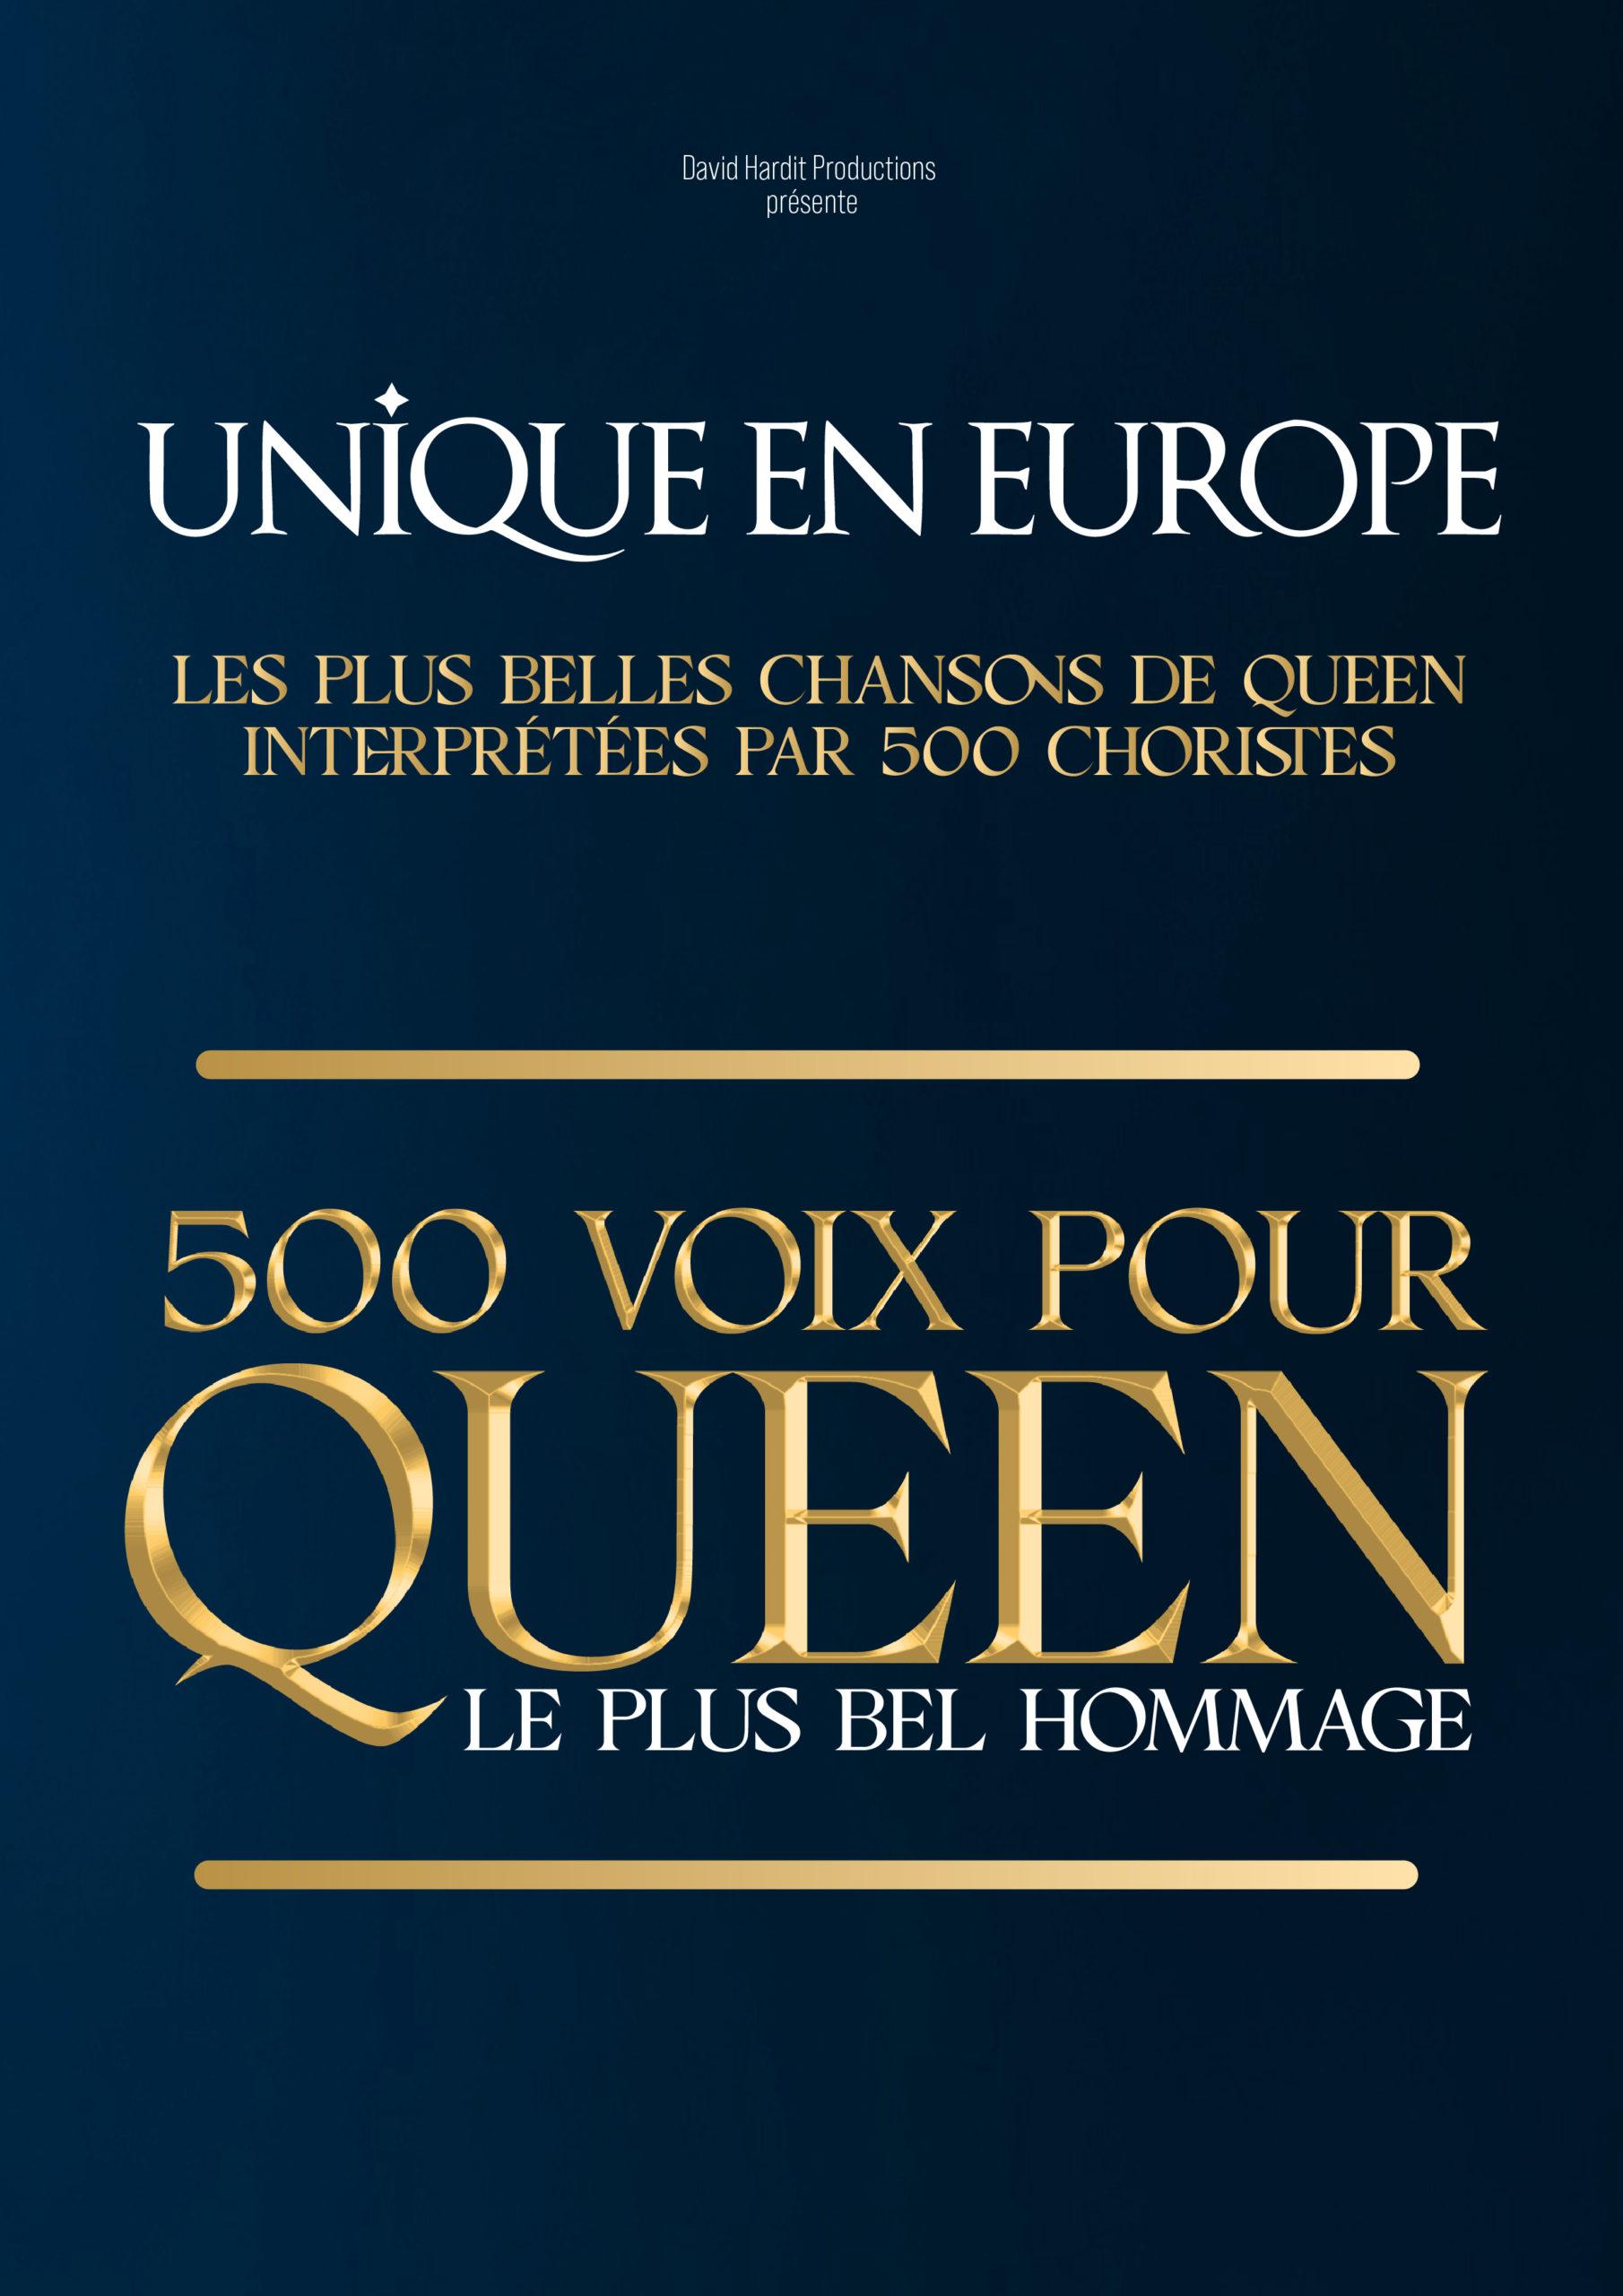 500 voix pour queen - Arena du Pays d'Aix - Aix-en-Provence (13)